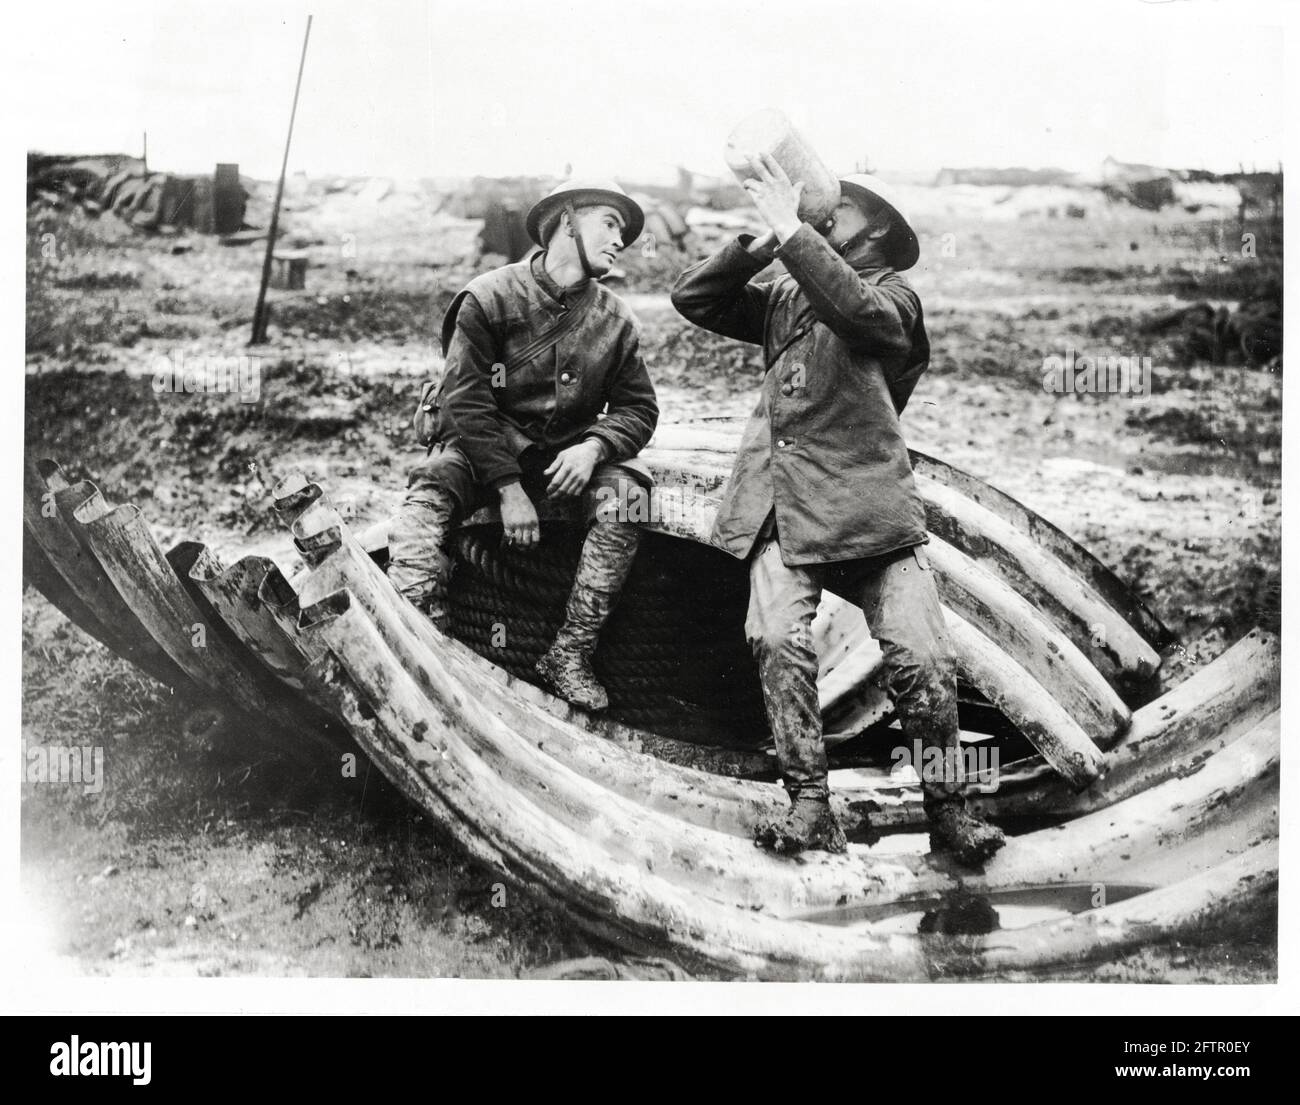 Première Guerre mondiale, première Guerre mondiale, front occidental - deux hommes se reposent et boivent sur des tôles de fer ondulé, France Banque D'Images